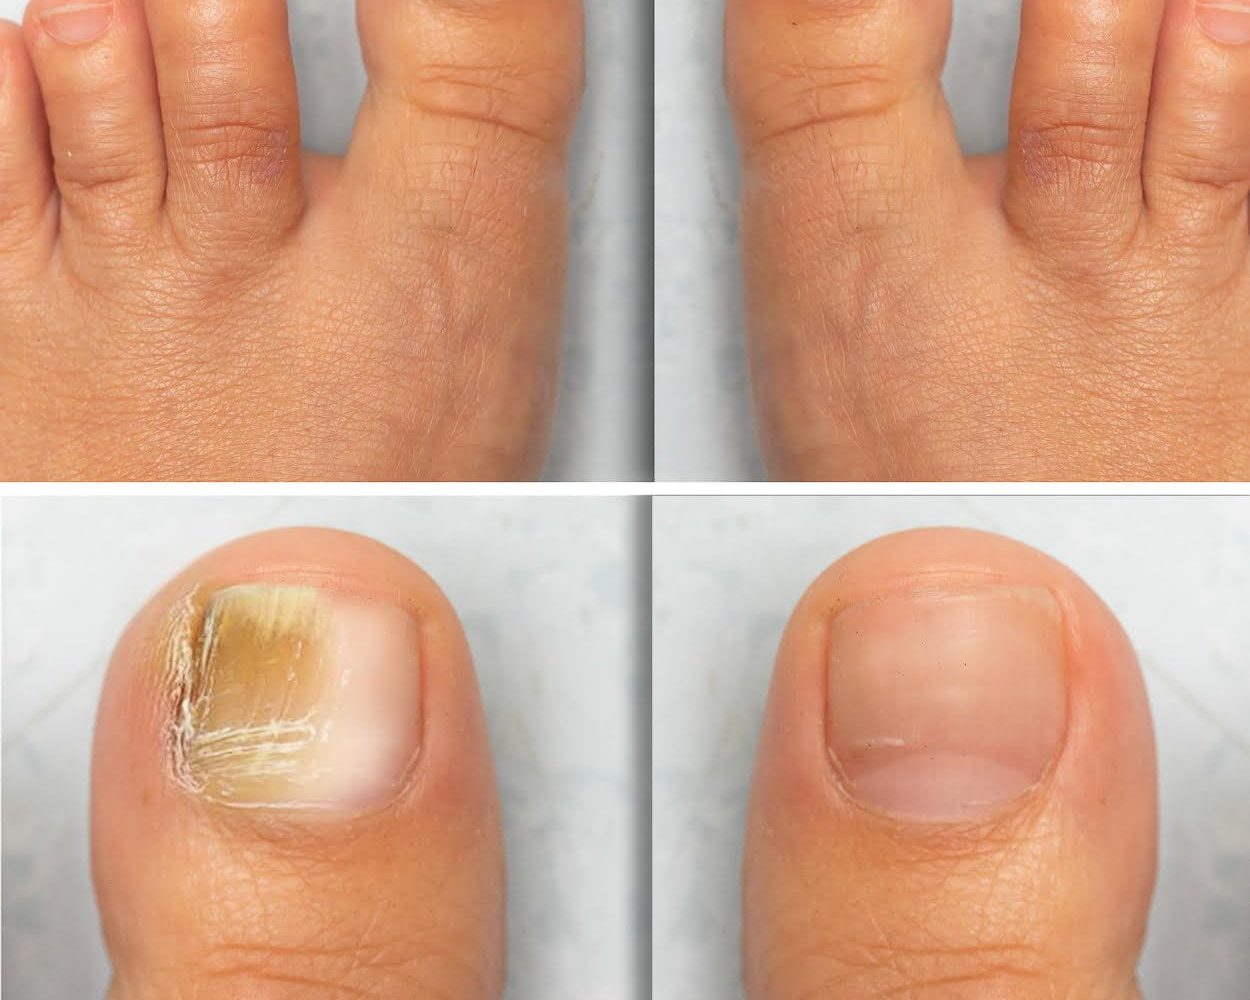 Foto de uñas del pie, antes y después de tratamiento contra onicomicosis